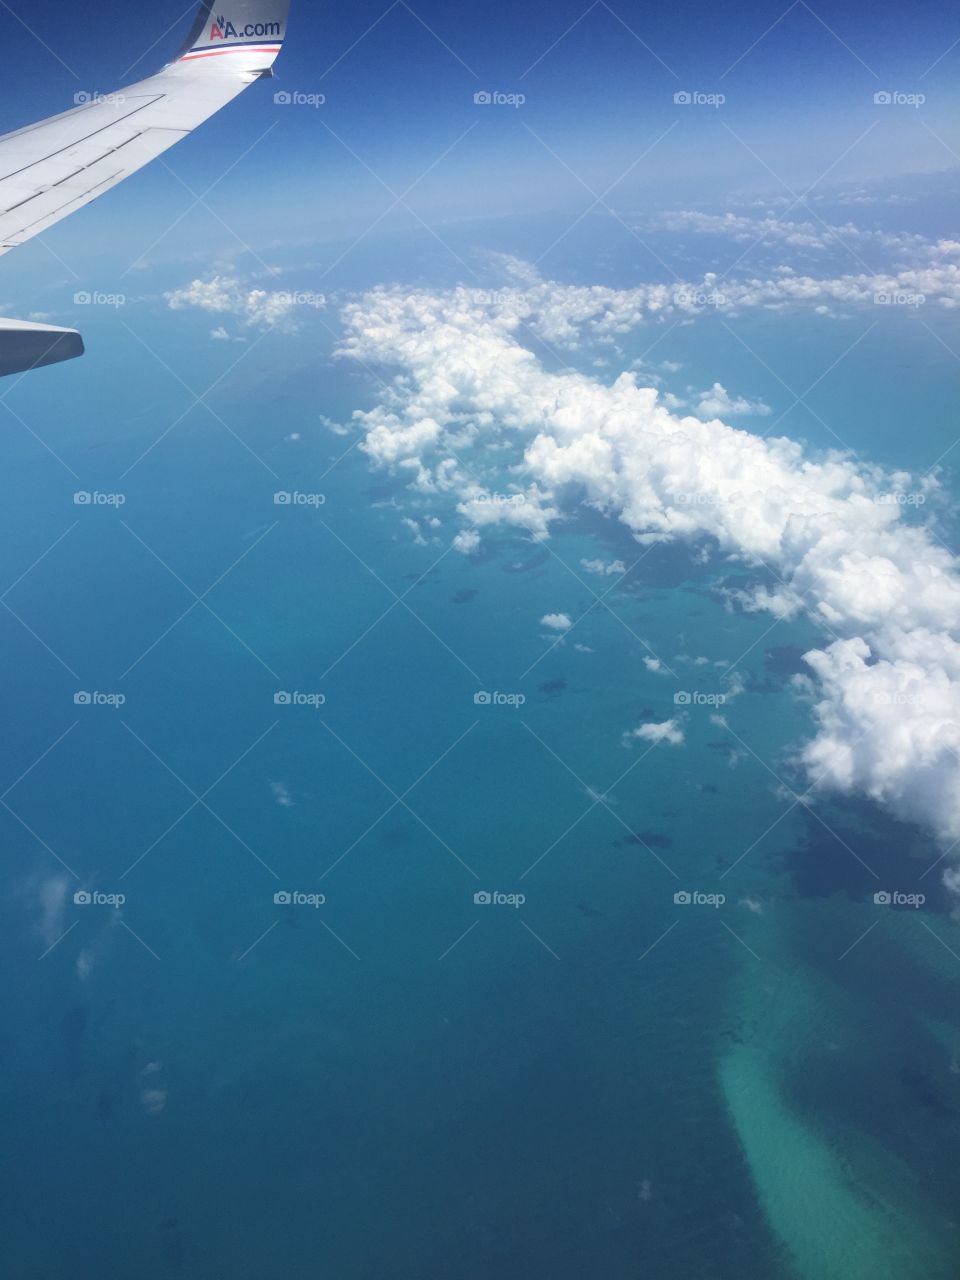 Flights over the ocean